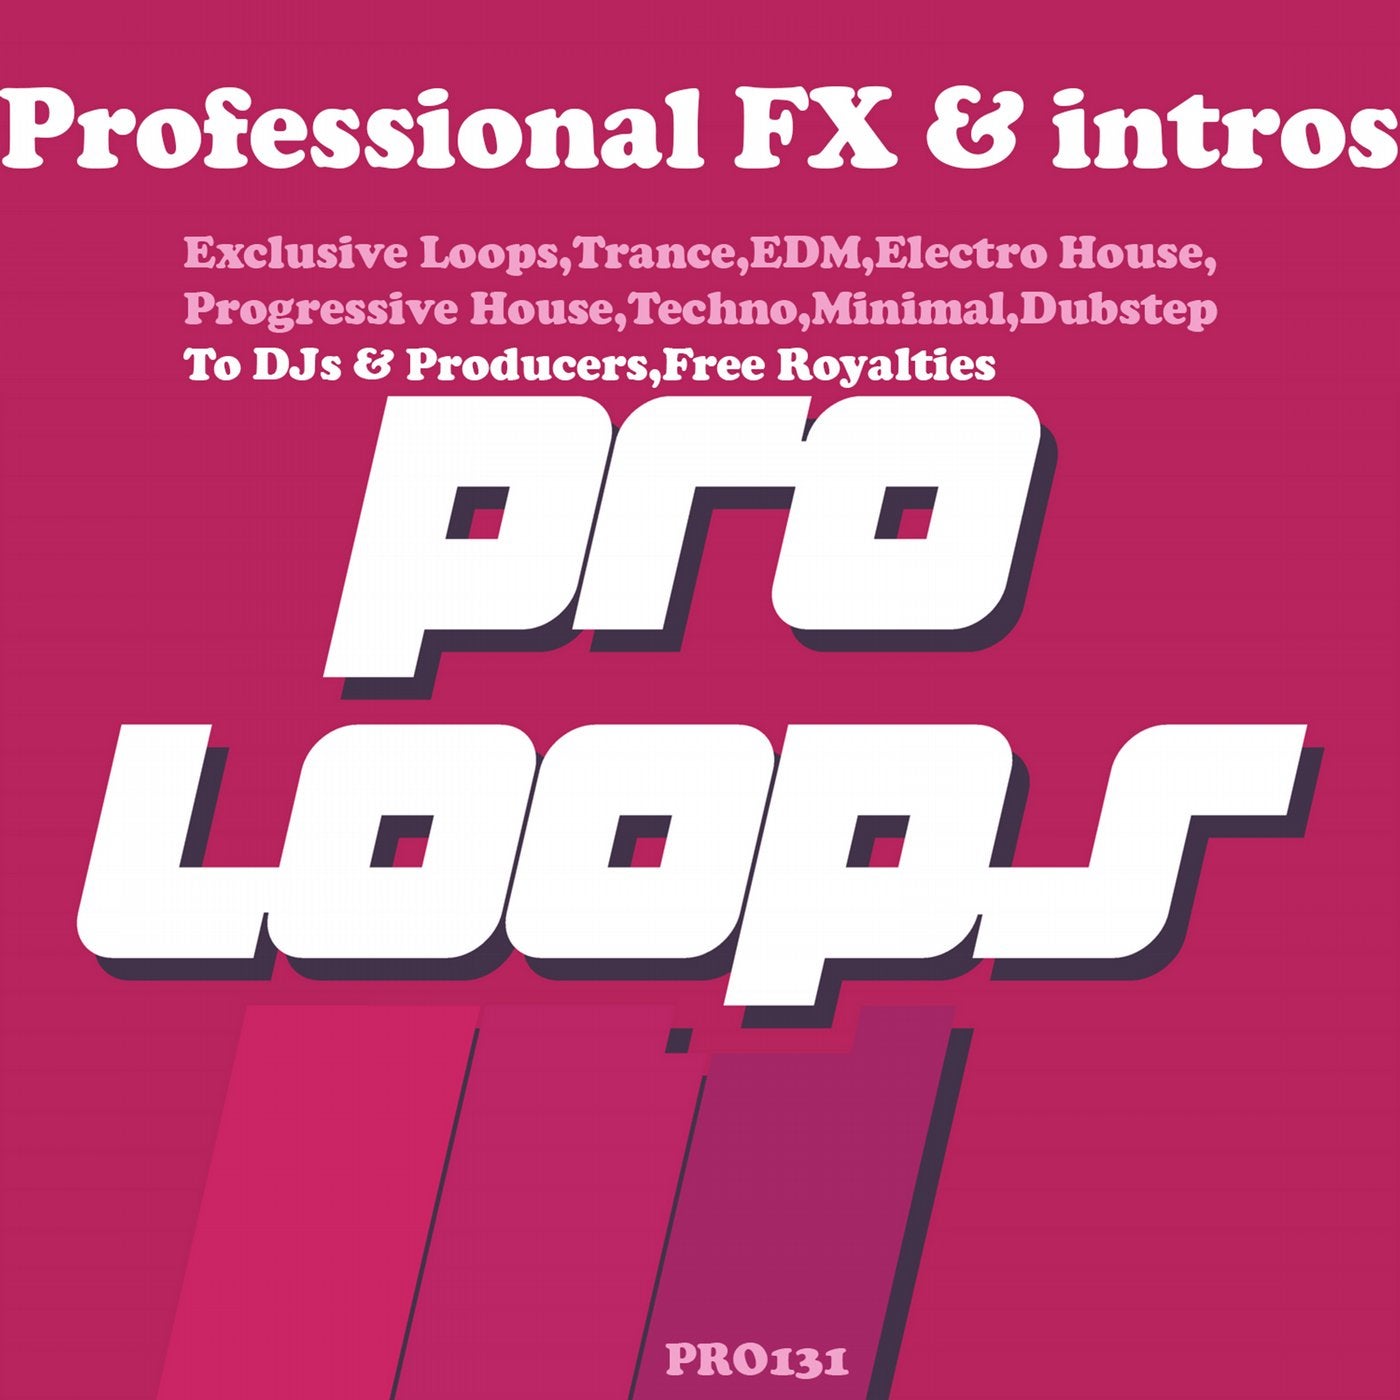 Professional FX & Intros DJ Tools